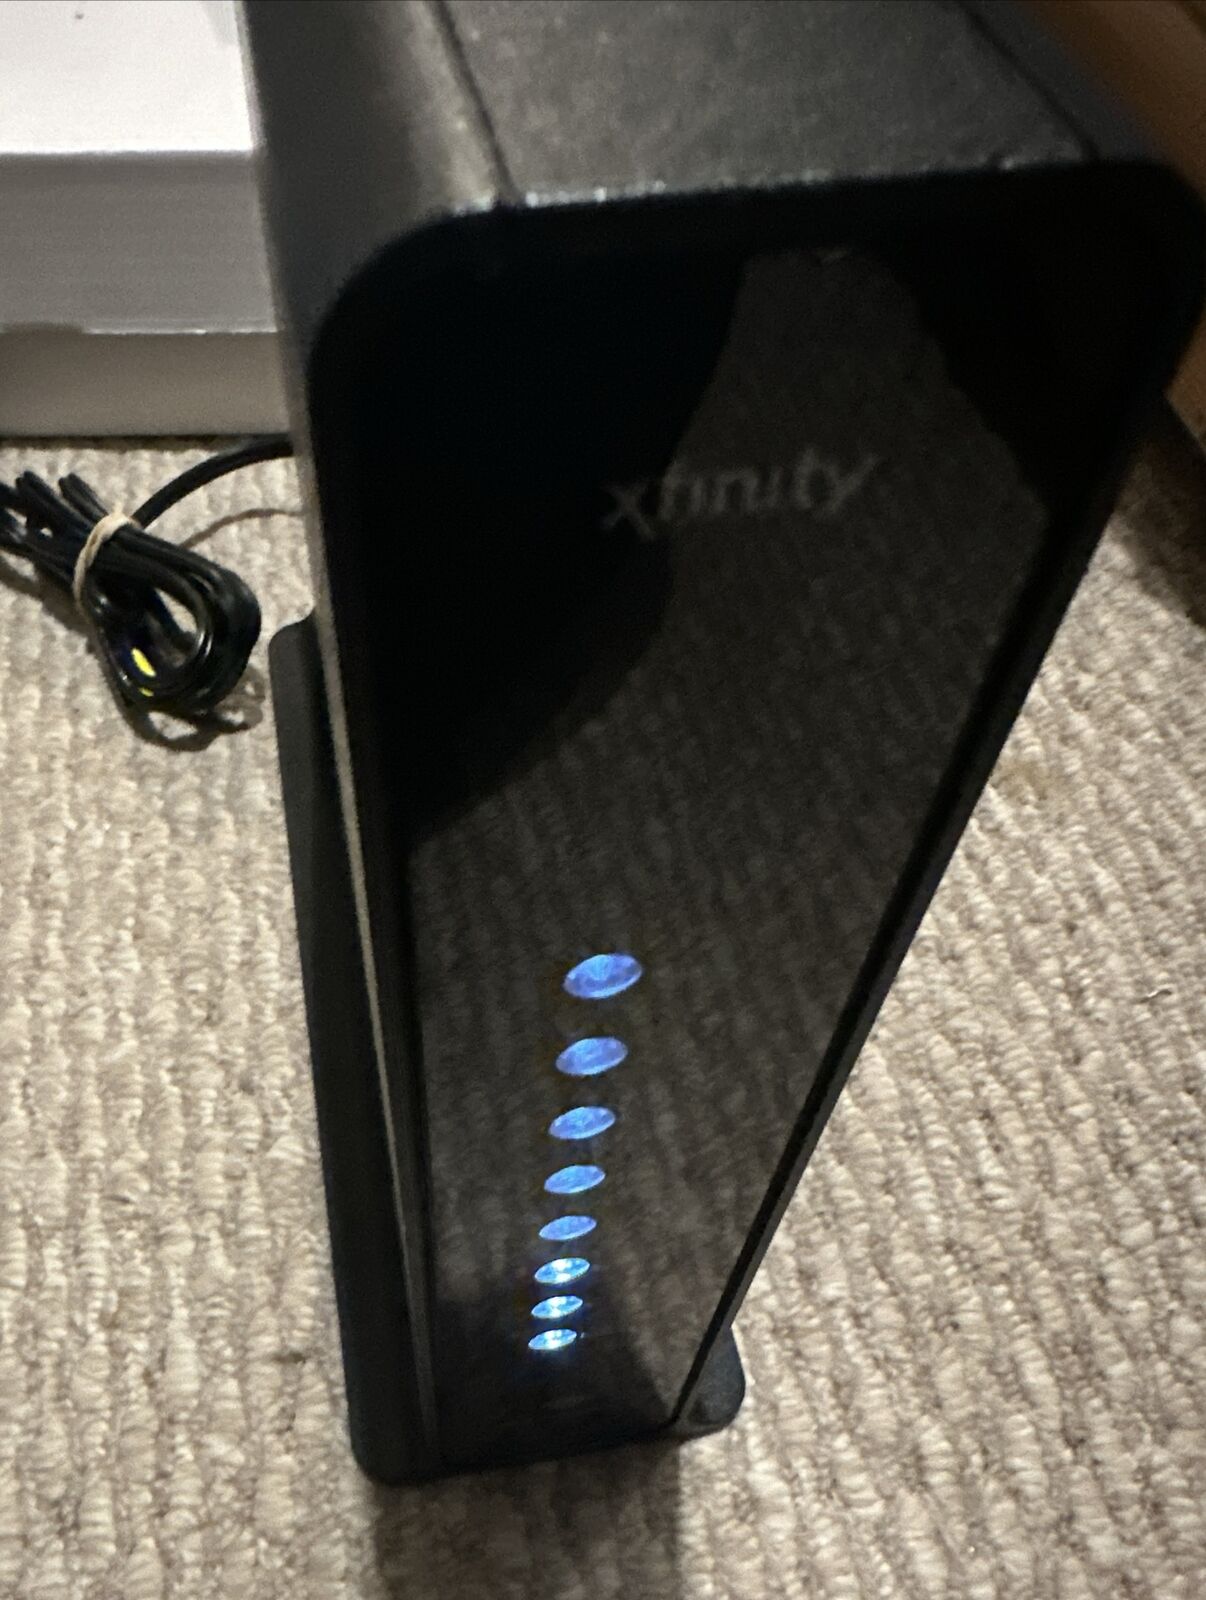 Xfinity Cisco DPC3941T XB3 Wireless Modem Router DOCSIS 3.0 Gateway